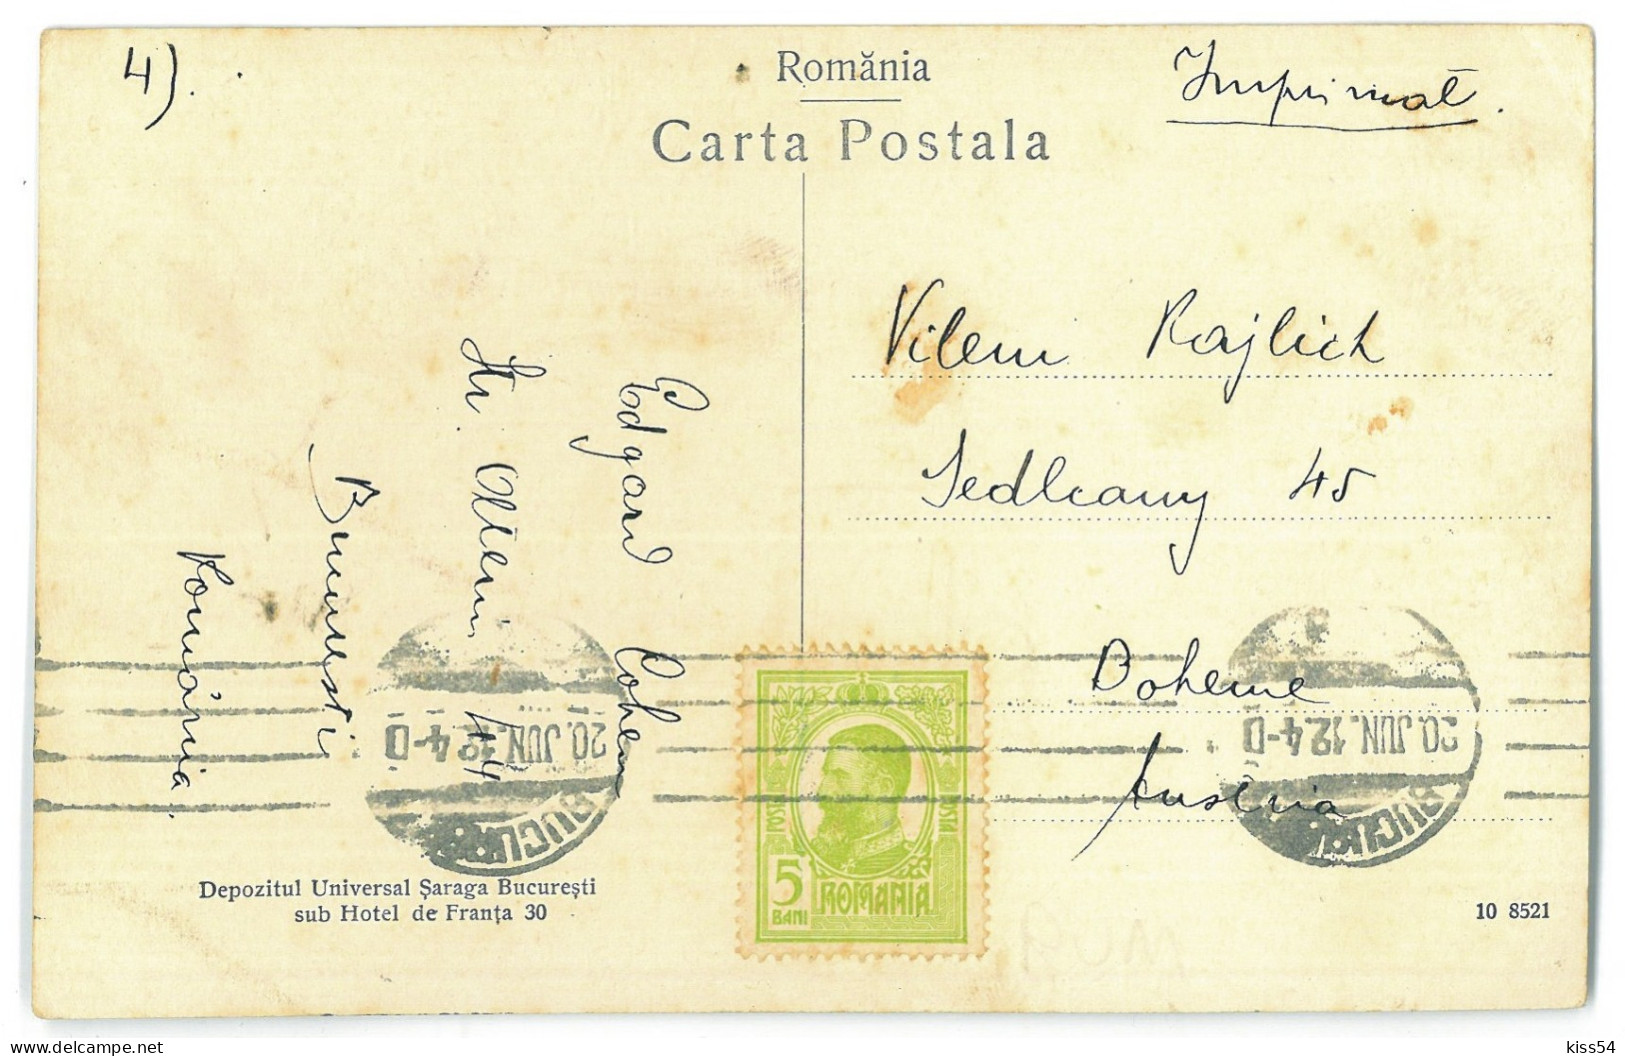 RO 40 - 23896 BUCURESTI, Bristol Hotel, Romania - Old Postcard - Used - 1912 - Roemenië